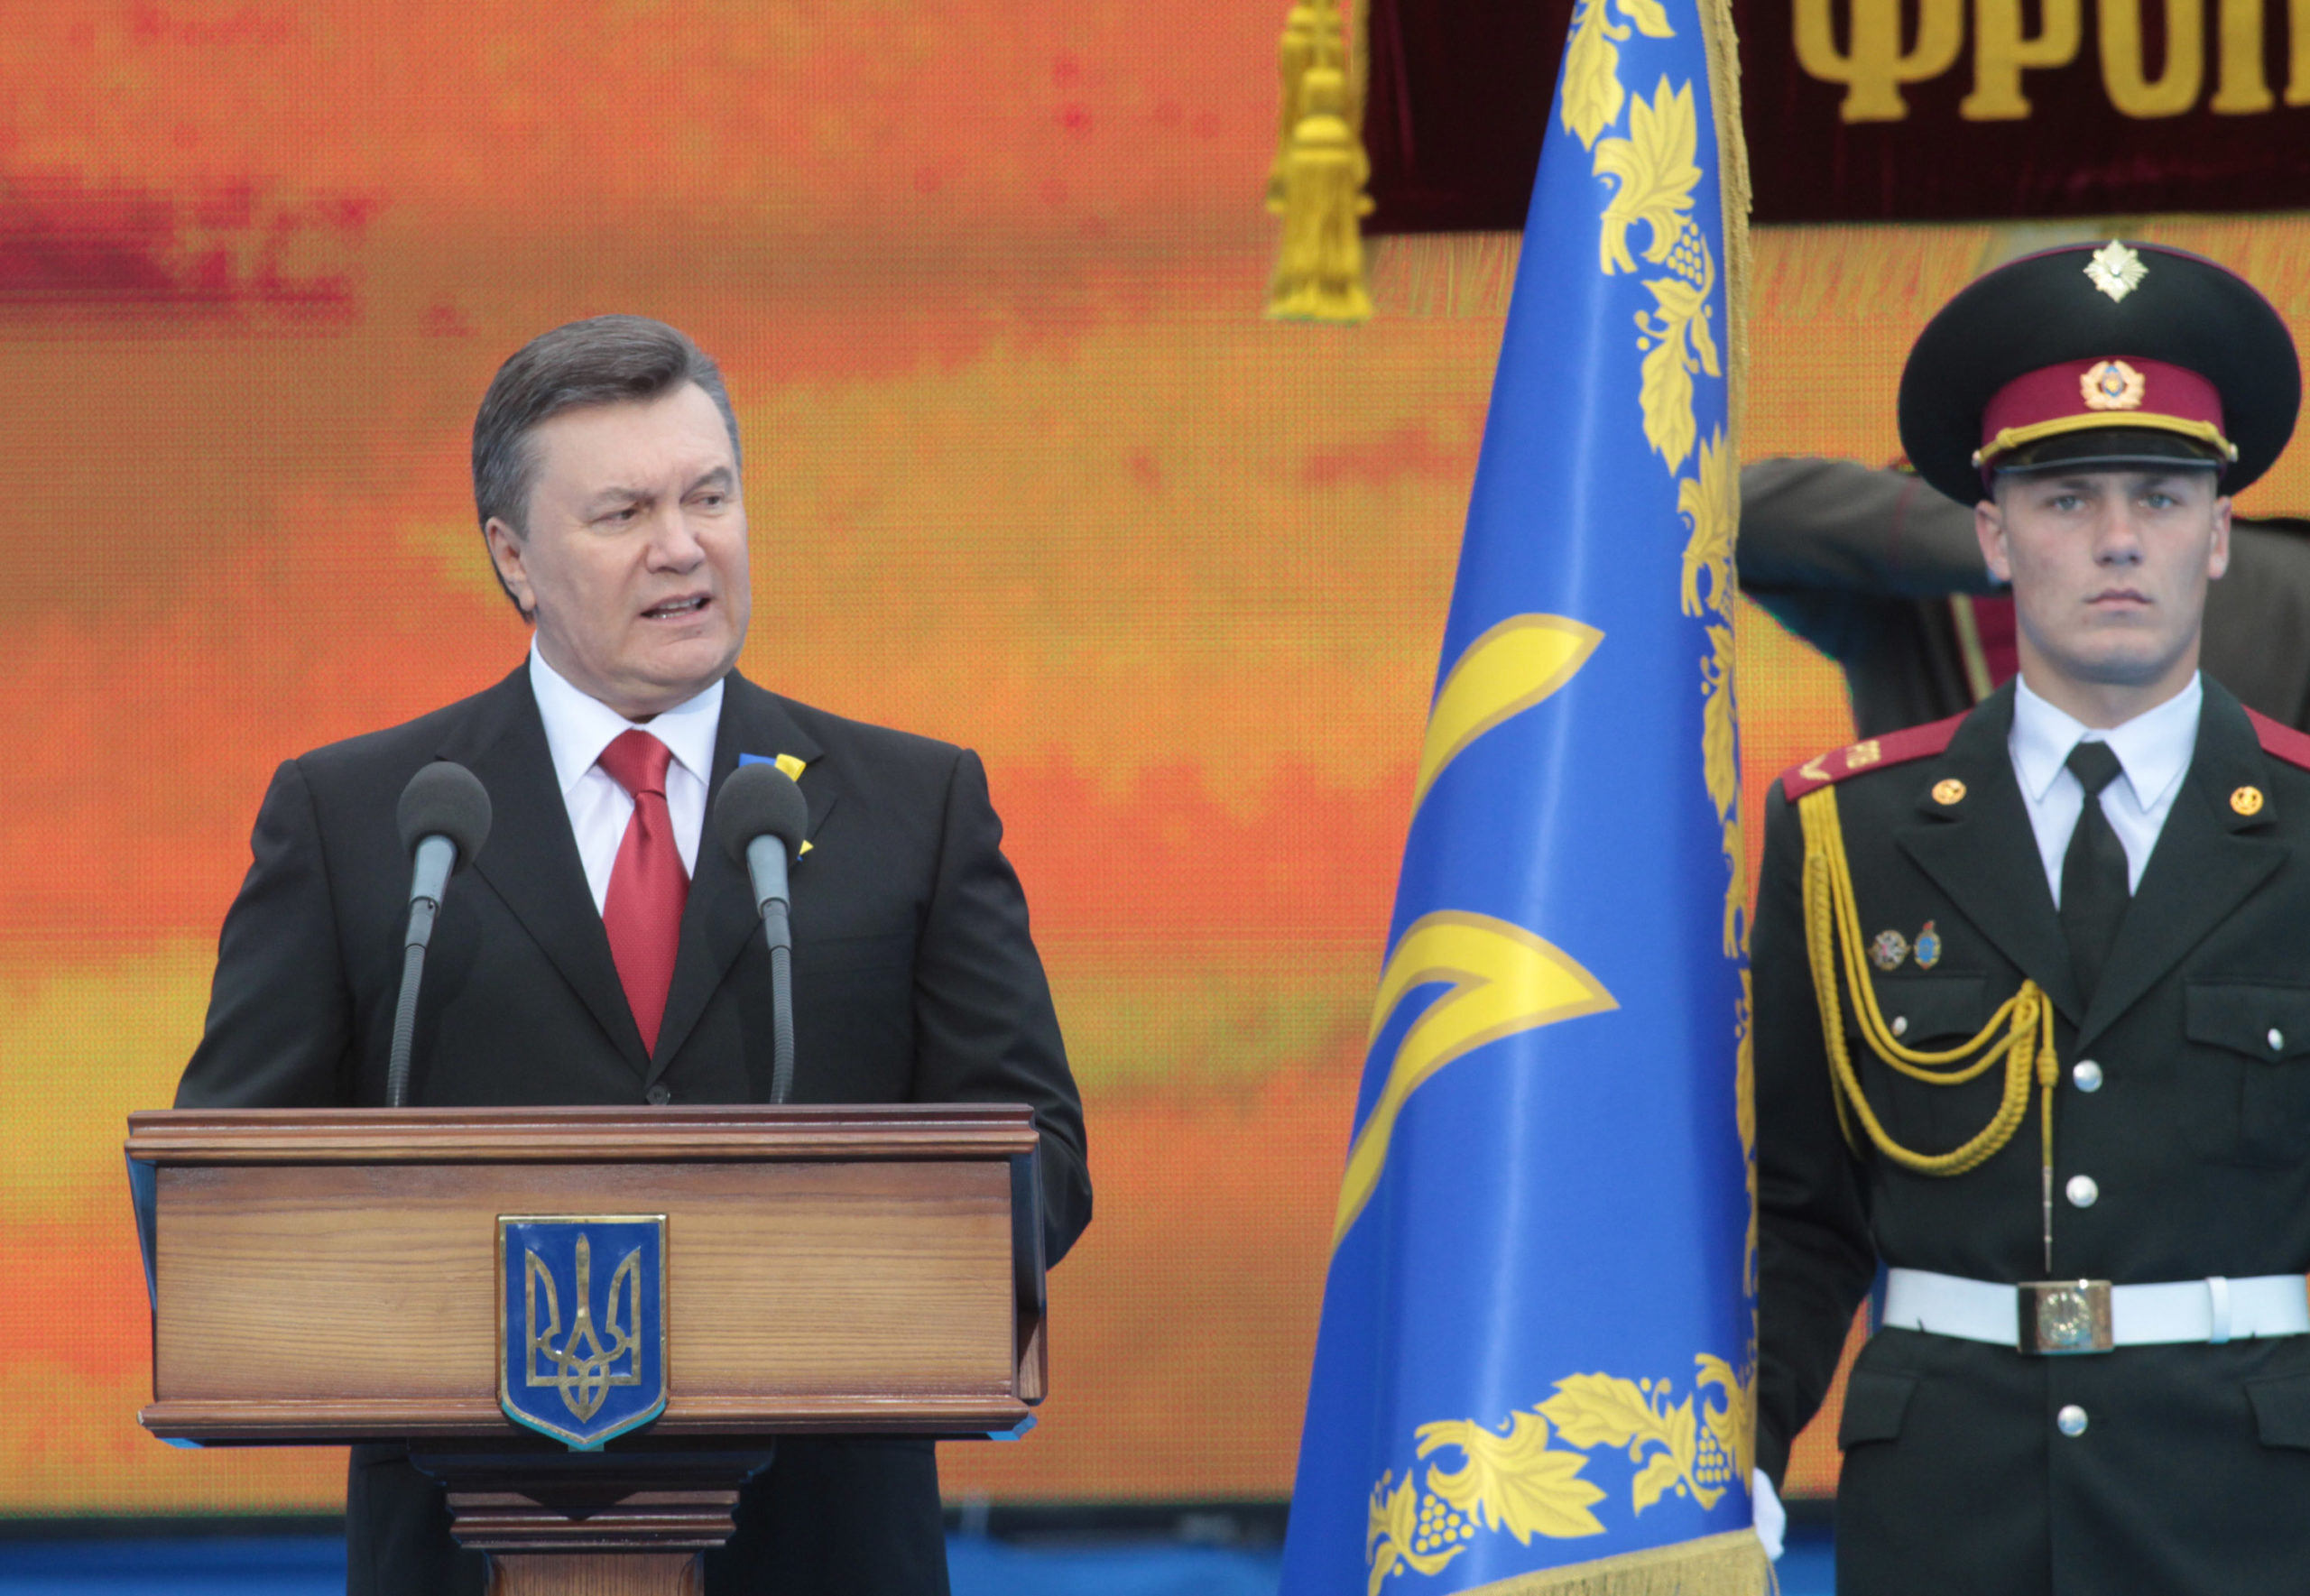 Ukrainan presidentti Viktor Janukovytš puhui Kiovan voitonpäivän juhlallisuuksissa viime toukokuussa. Kuva: SERGEY STAROSTENKO/XINHUA PRESS/CORBIS